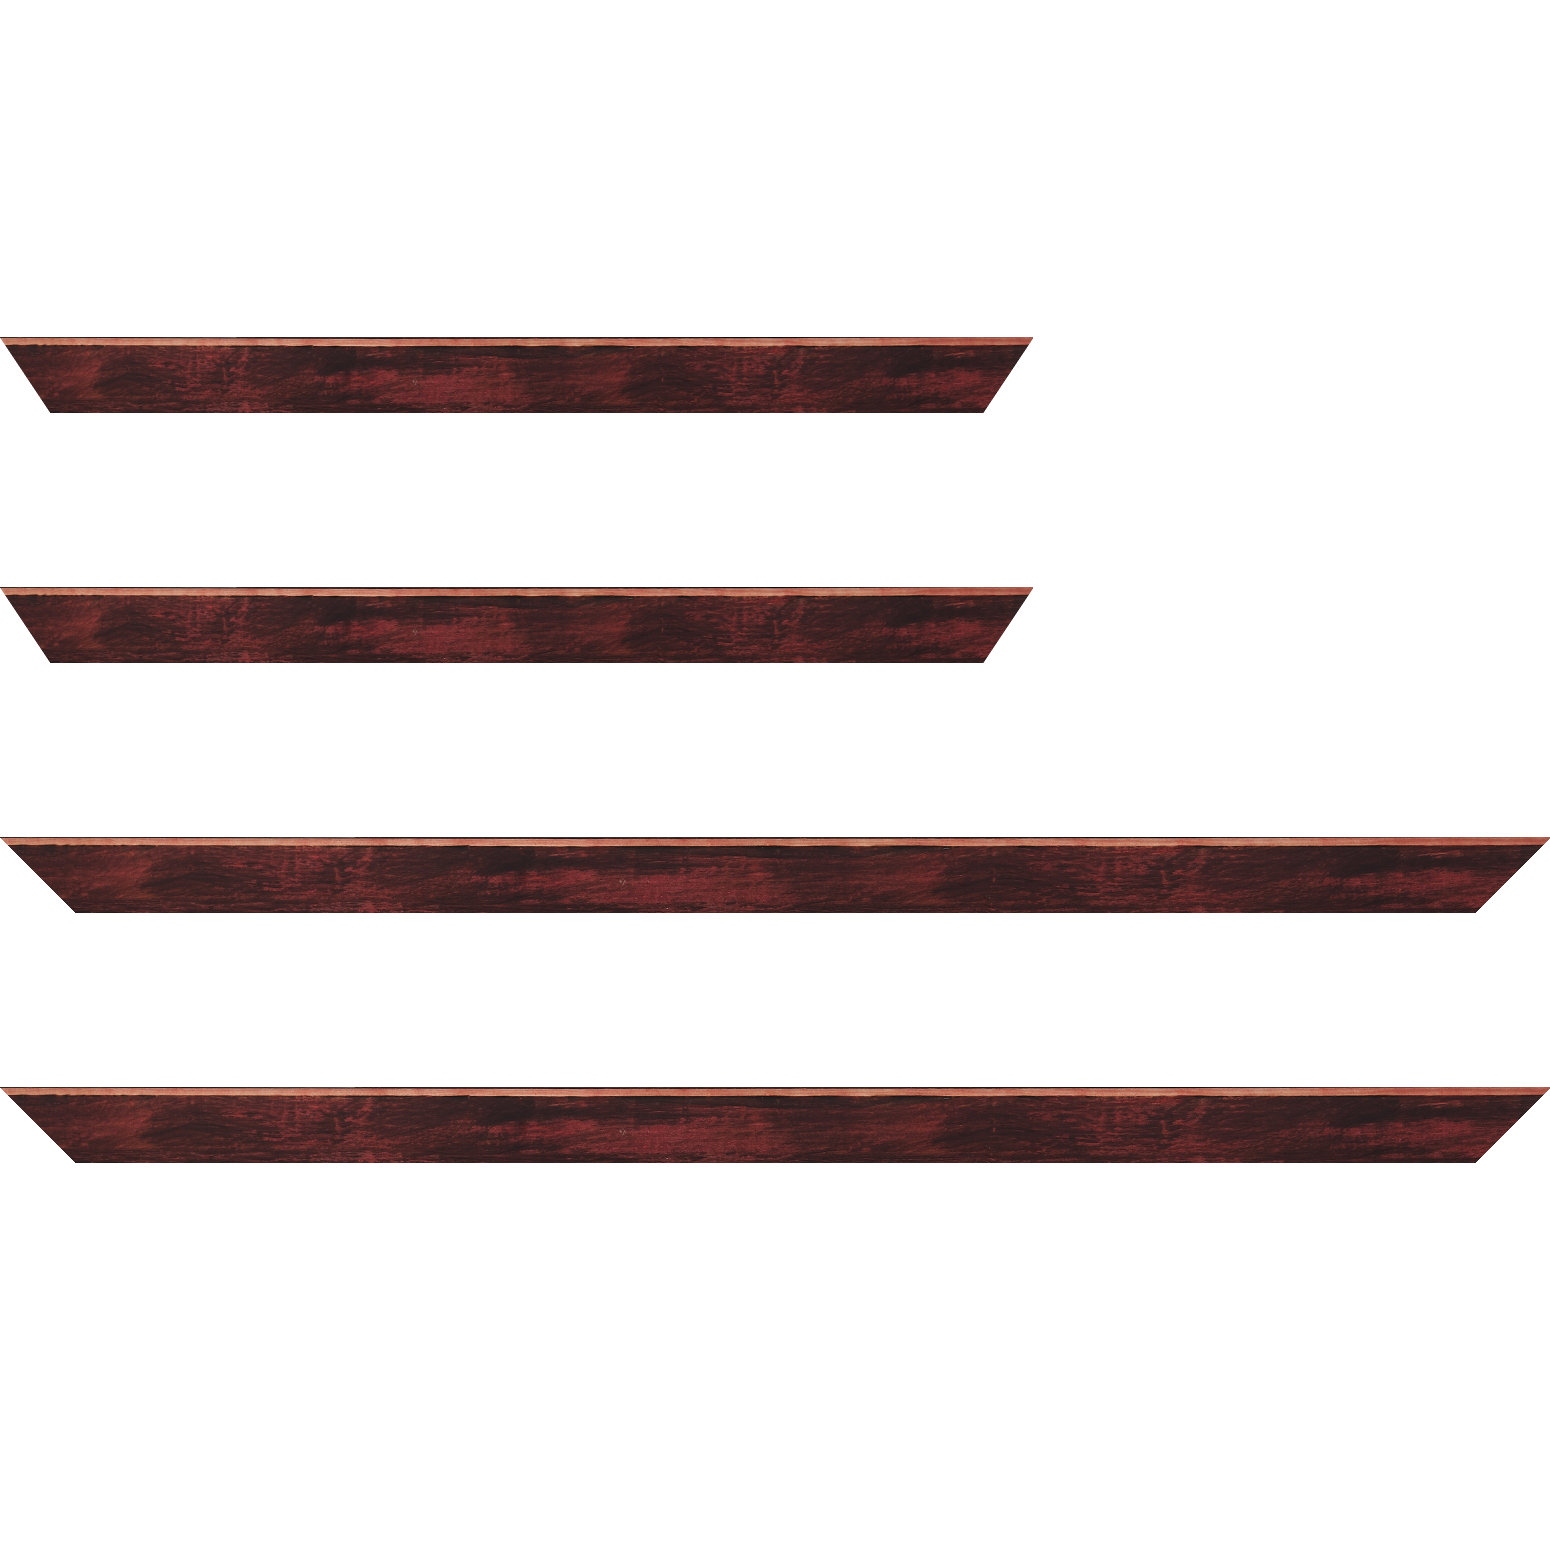 Baguette bois profil arrondi en pente plongeant largeur 2.4cm couleur bordeaux effet ressuyé, angle du cadre extérieur filet naturel - 24x30